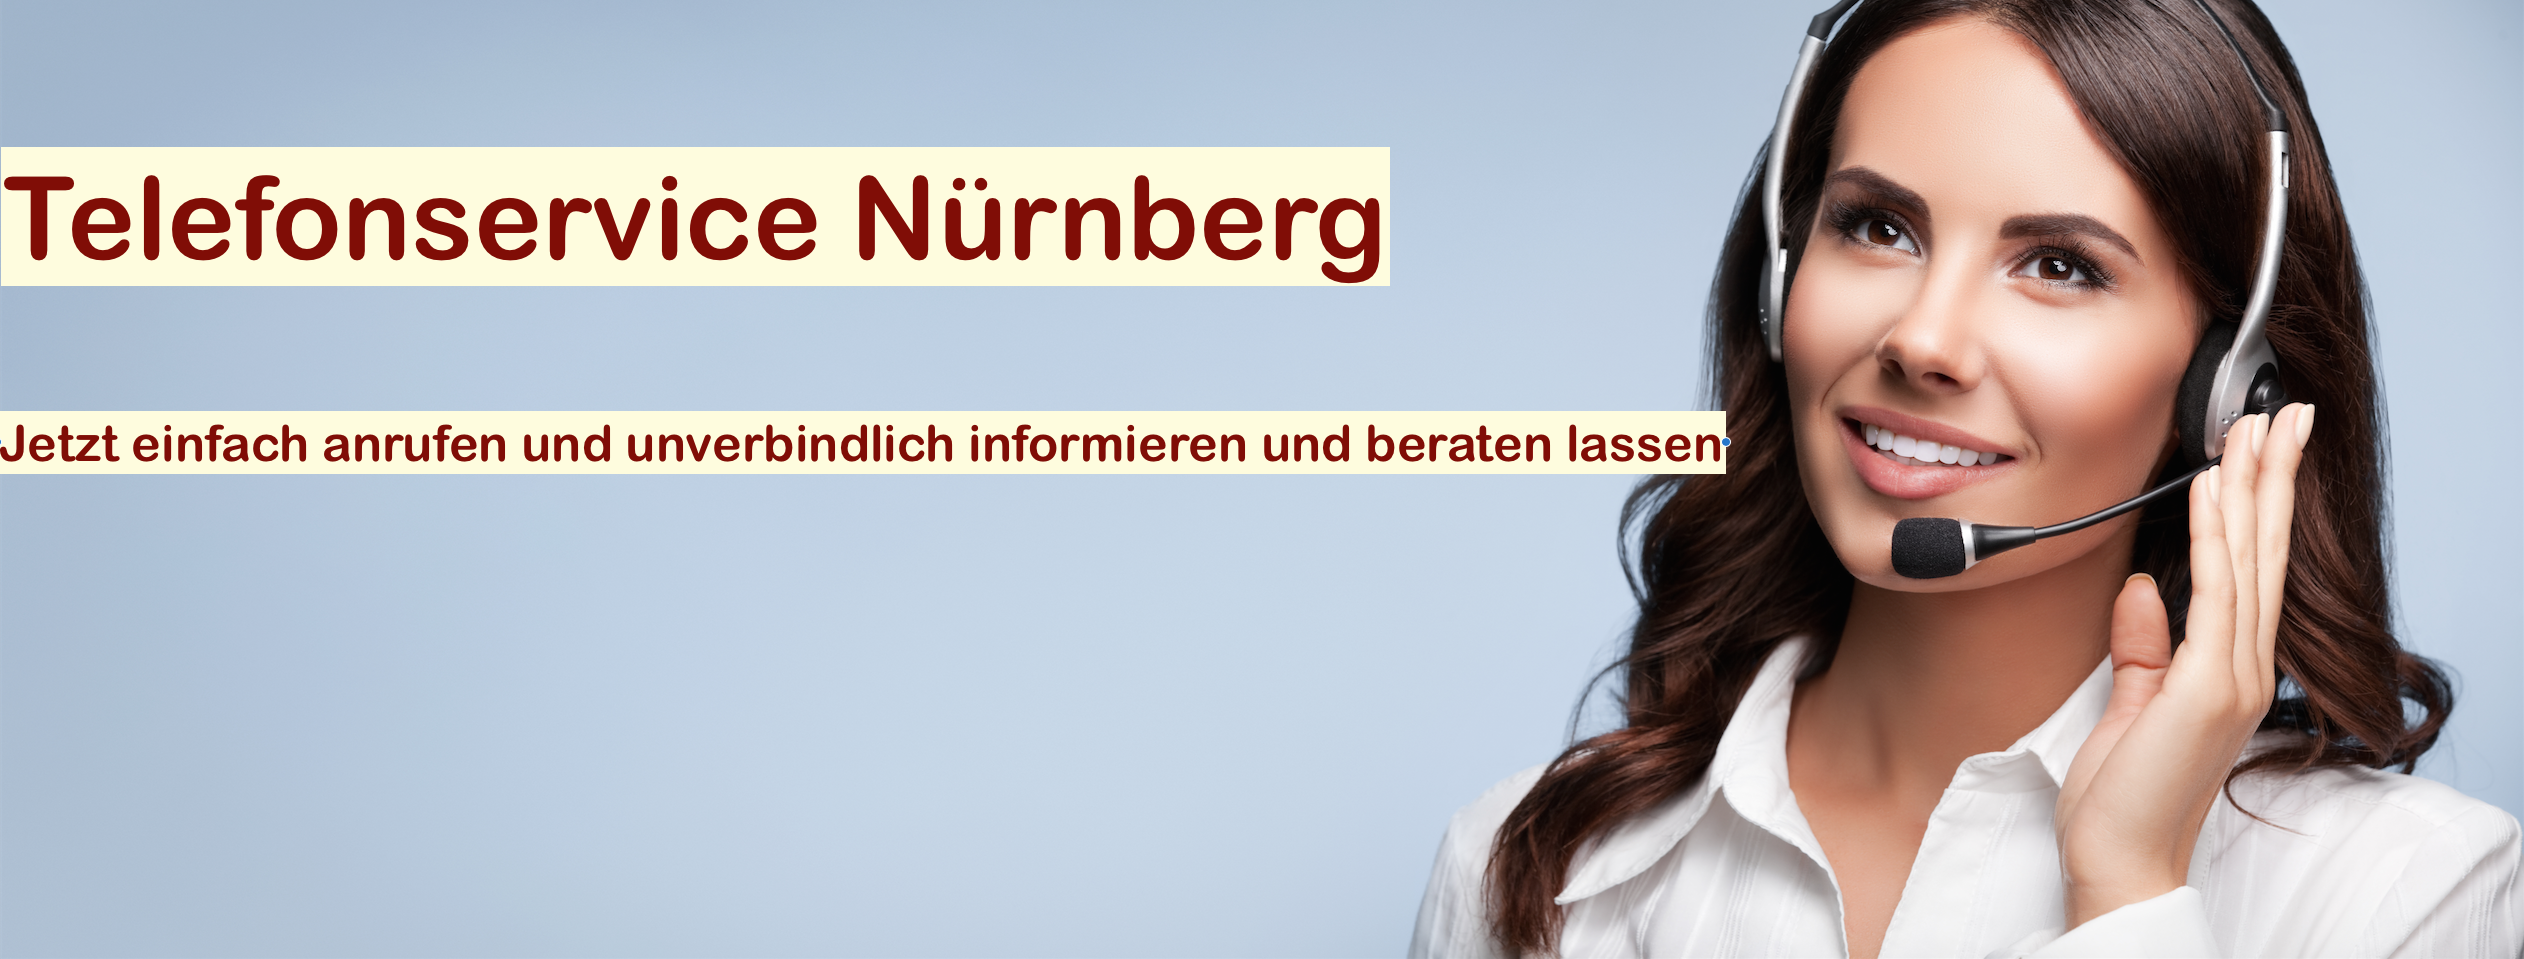 Telefonservice Nürnberg